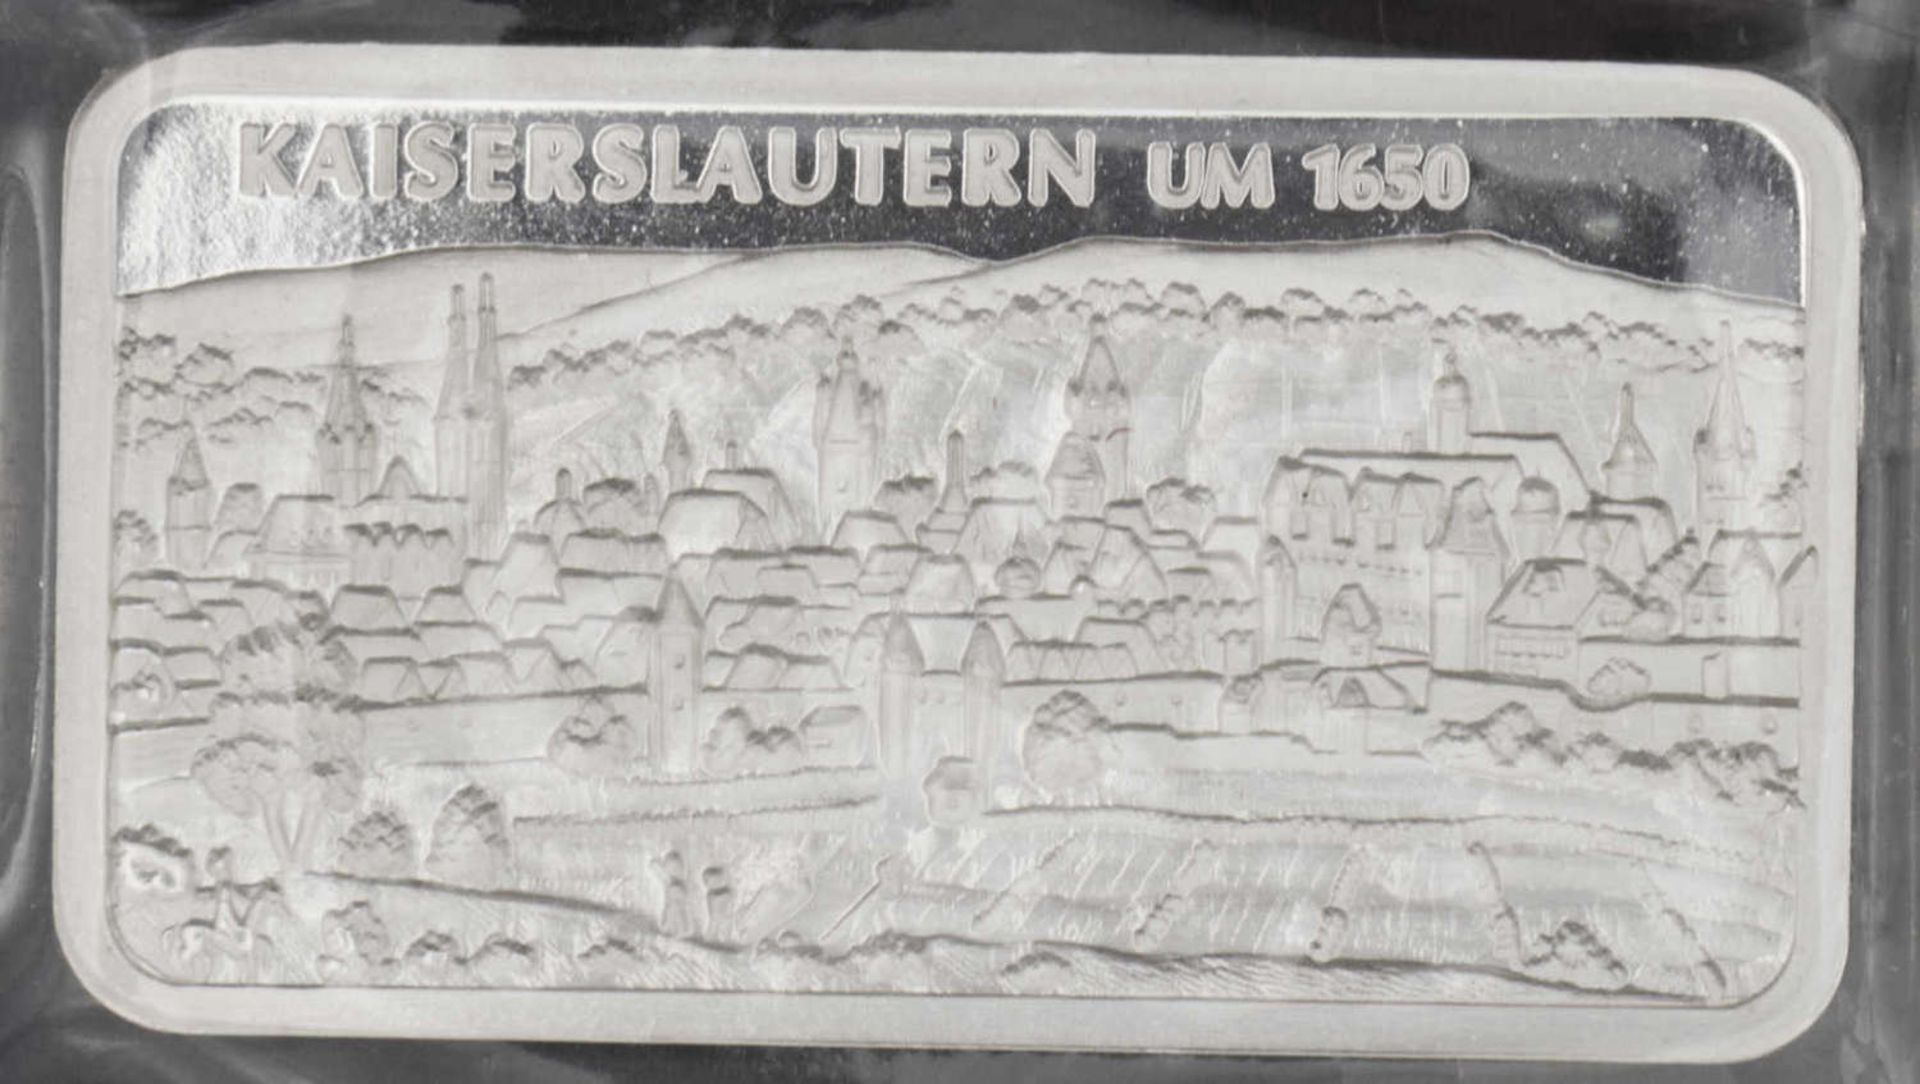 Kaiserslautern, 1 Unze Silberbarren. Silber 999.